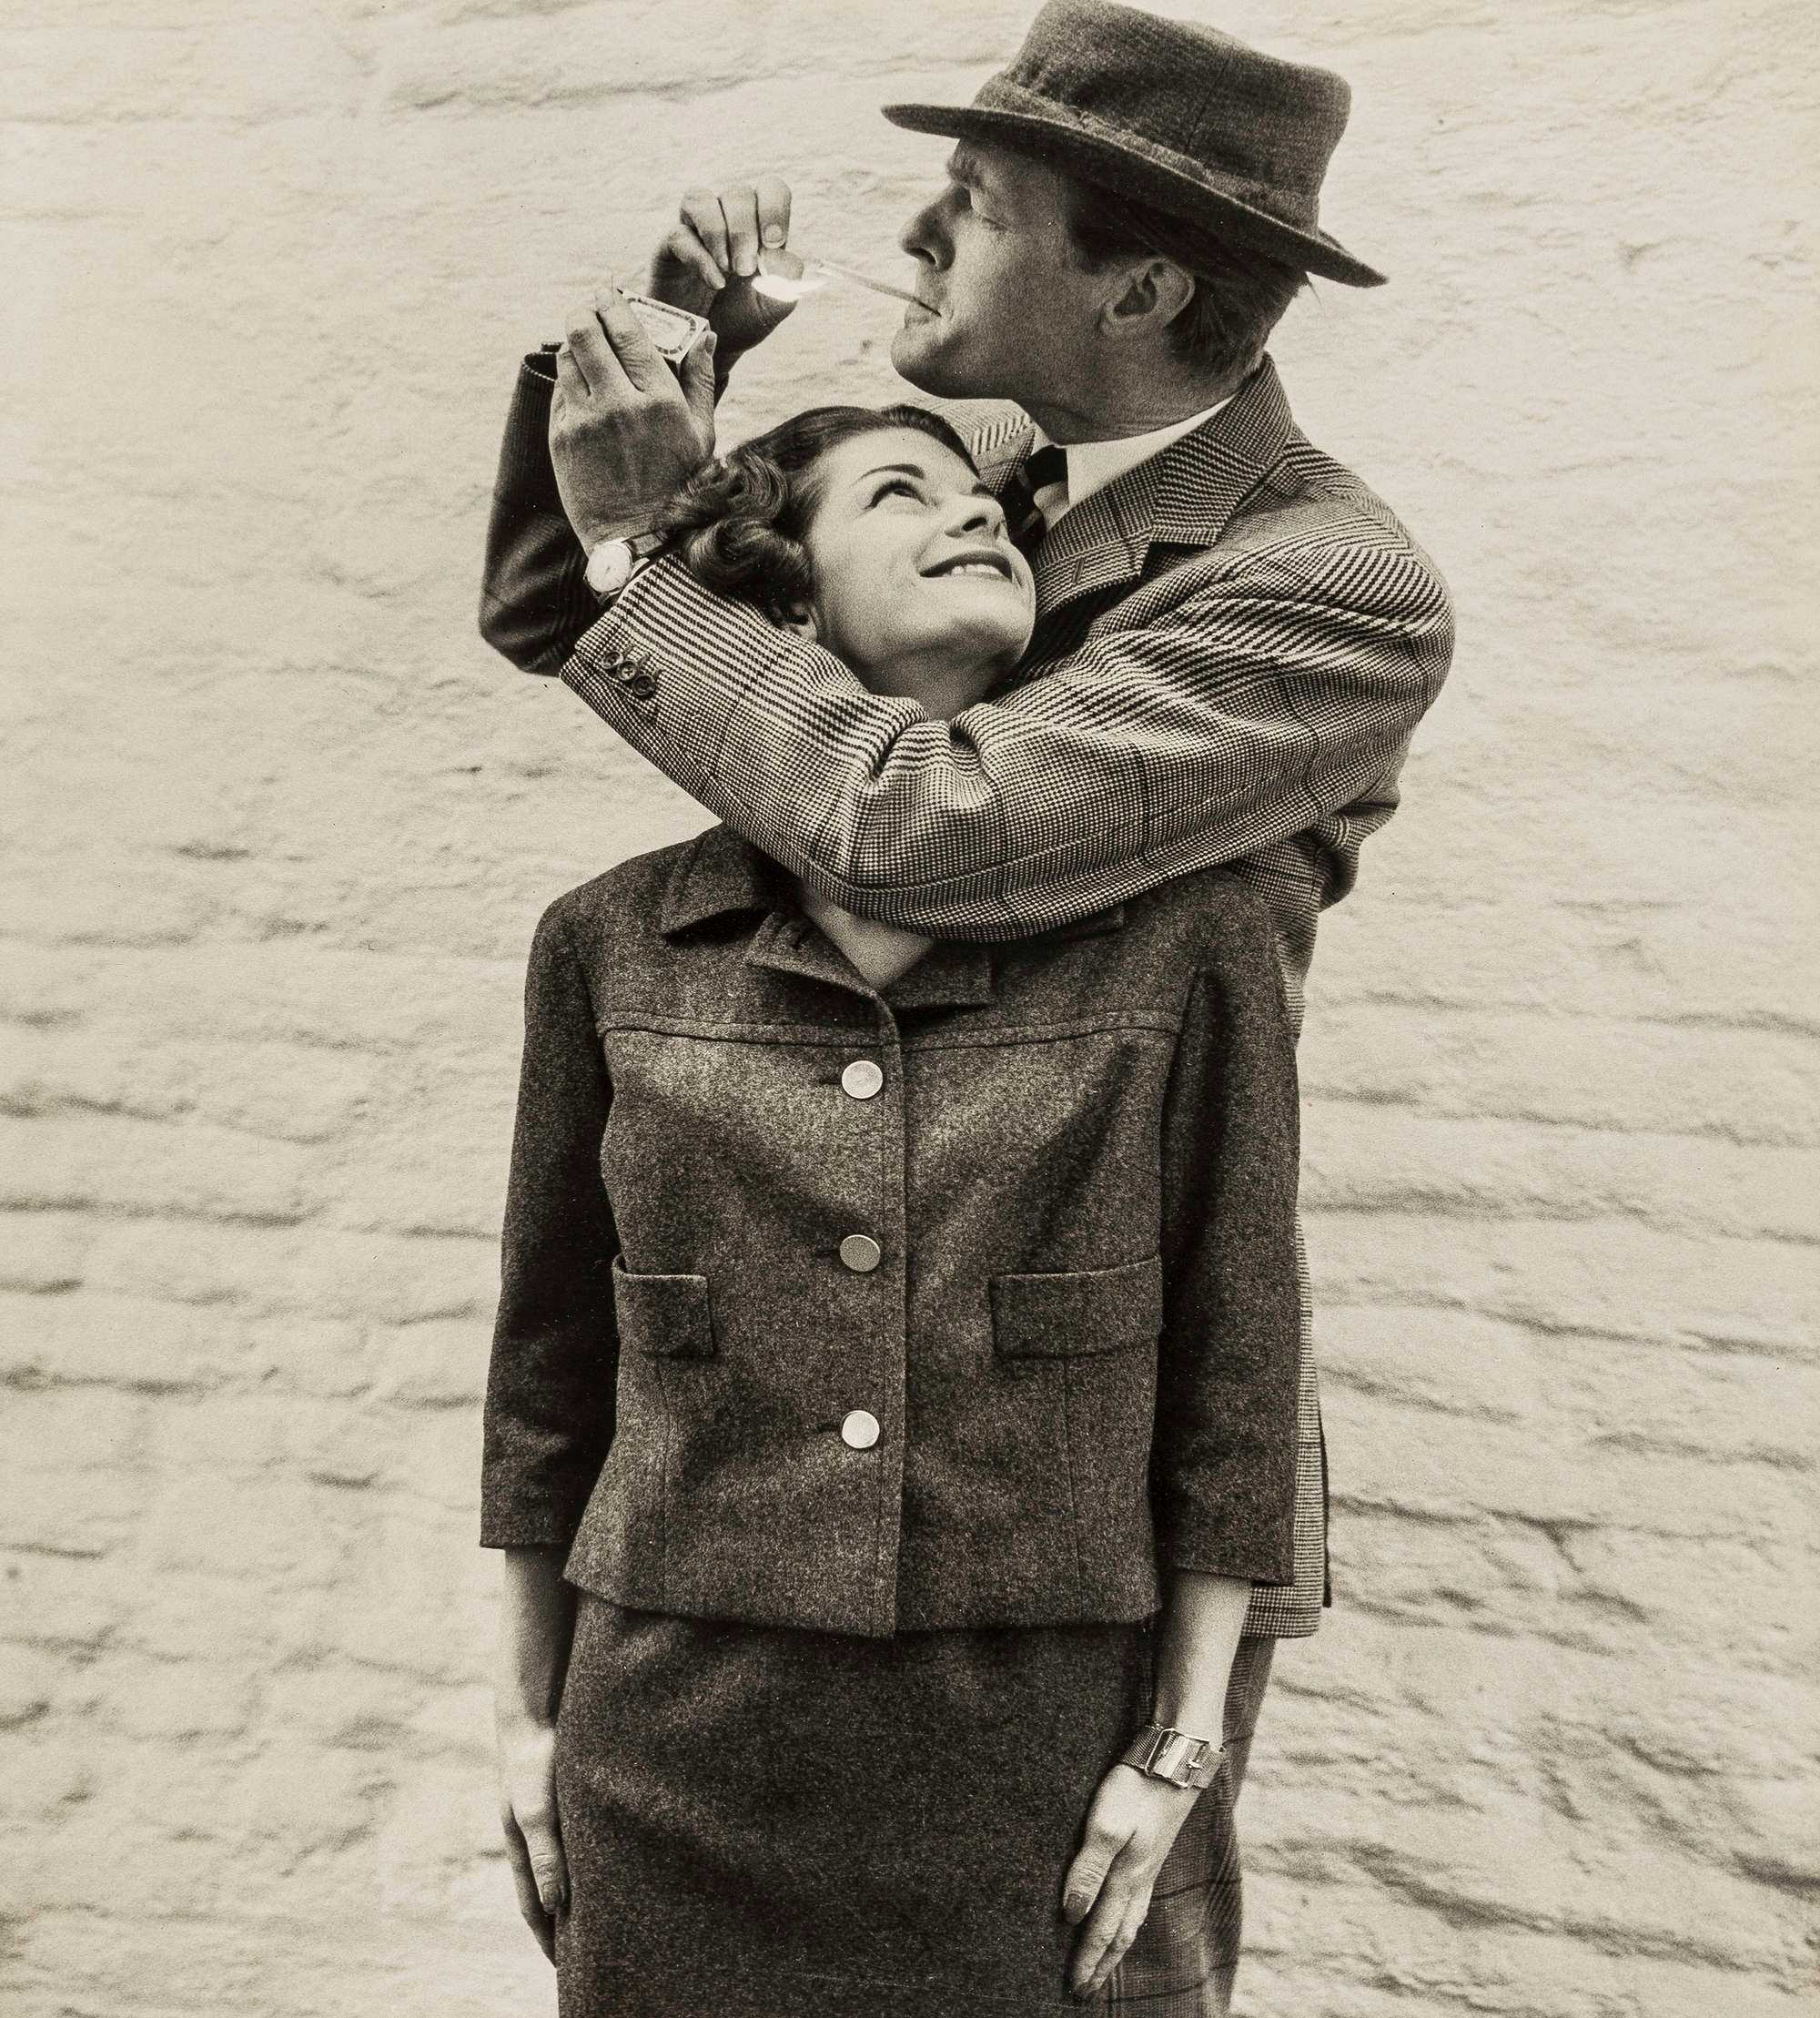 Норман Паркинсон Norman Parkinson — экспериментатор в мире фотографии Его можно считать одним из основателей фэшн-стиля Проведя половину века с фотокамерой в руках, Норман оставил достойное наследие